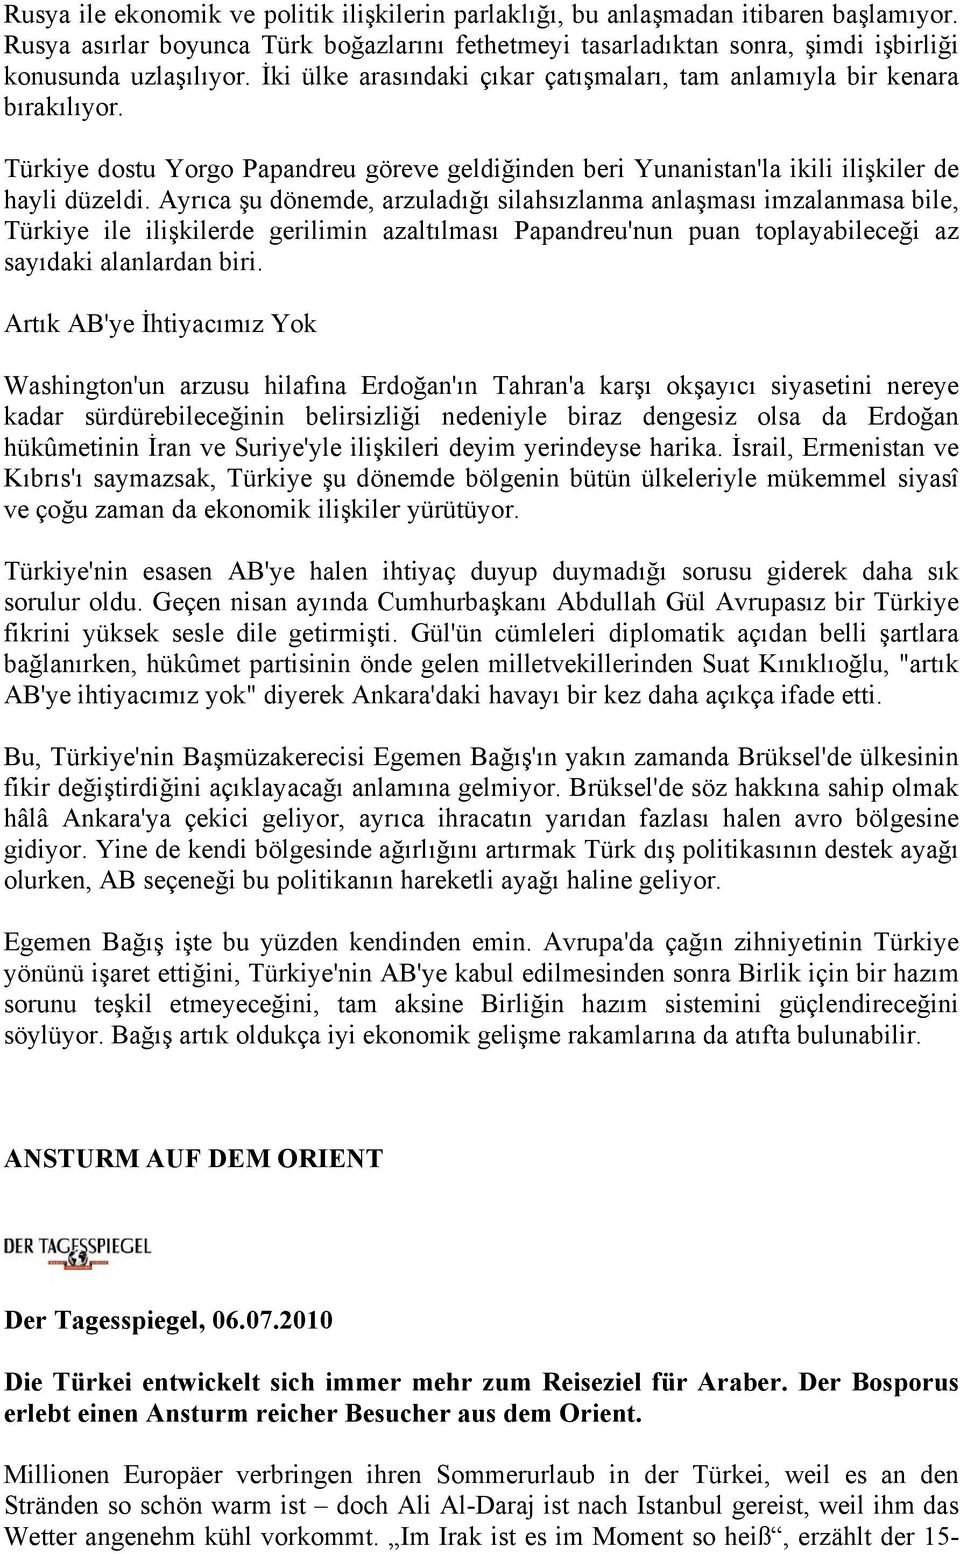 Ayrıca şu dönemde, arzuladığı silahsızlanma anlaşması imzalanmasa bile, Türkiye ile ilişkilerde gerilimin azaltılması Papandreu'nun puan toplayabileceği az sayıdaki alanlardan biri.